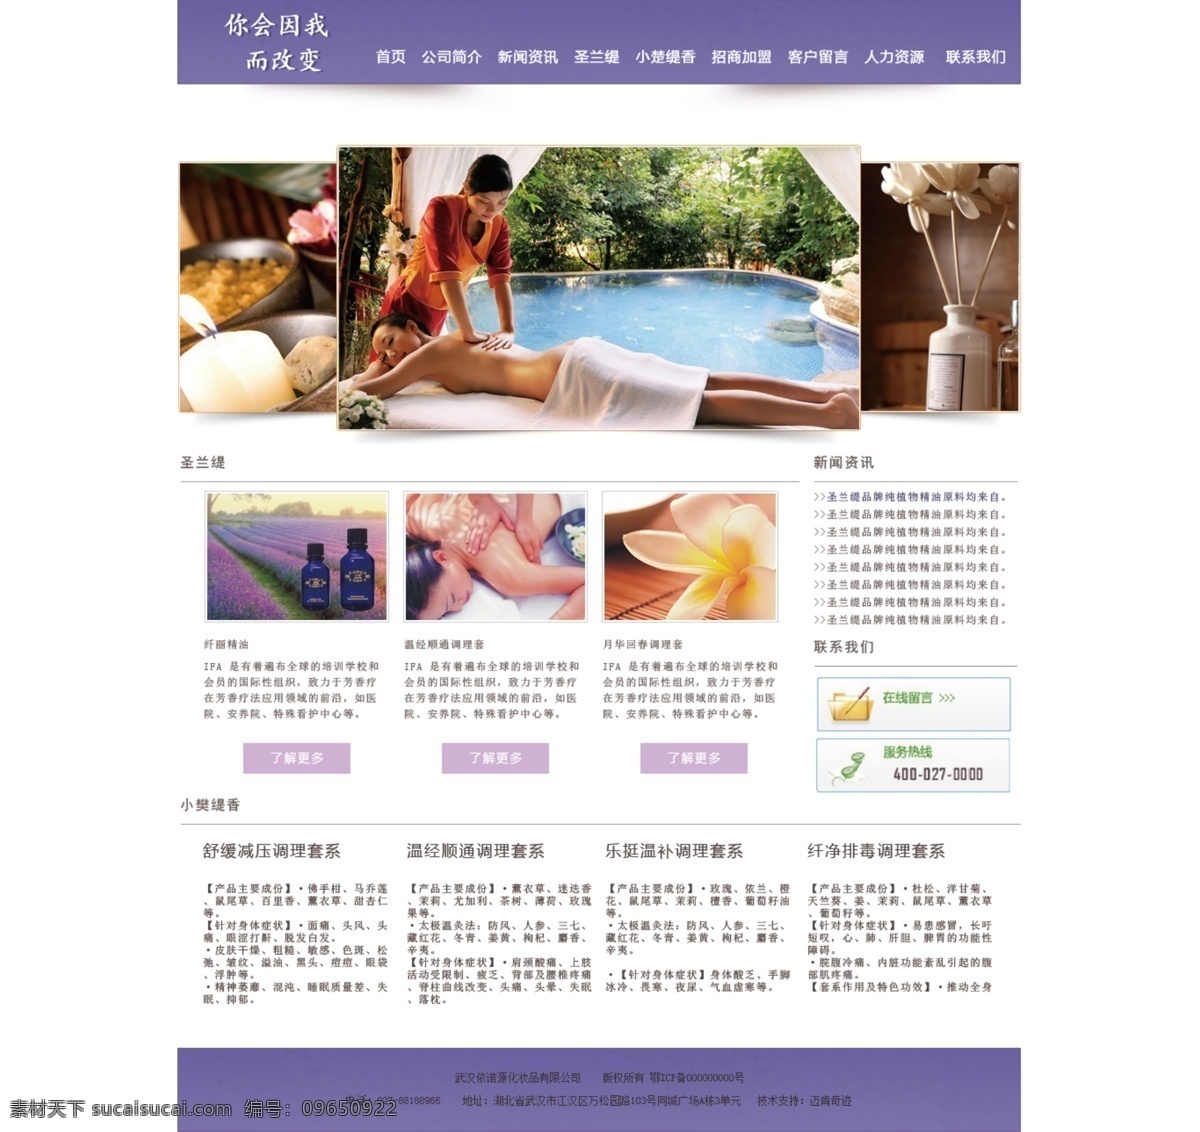 美容养生 网站模板 女性网站 美容网站 首页模板 web 界面设计 中文模板 白色